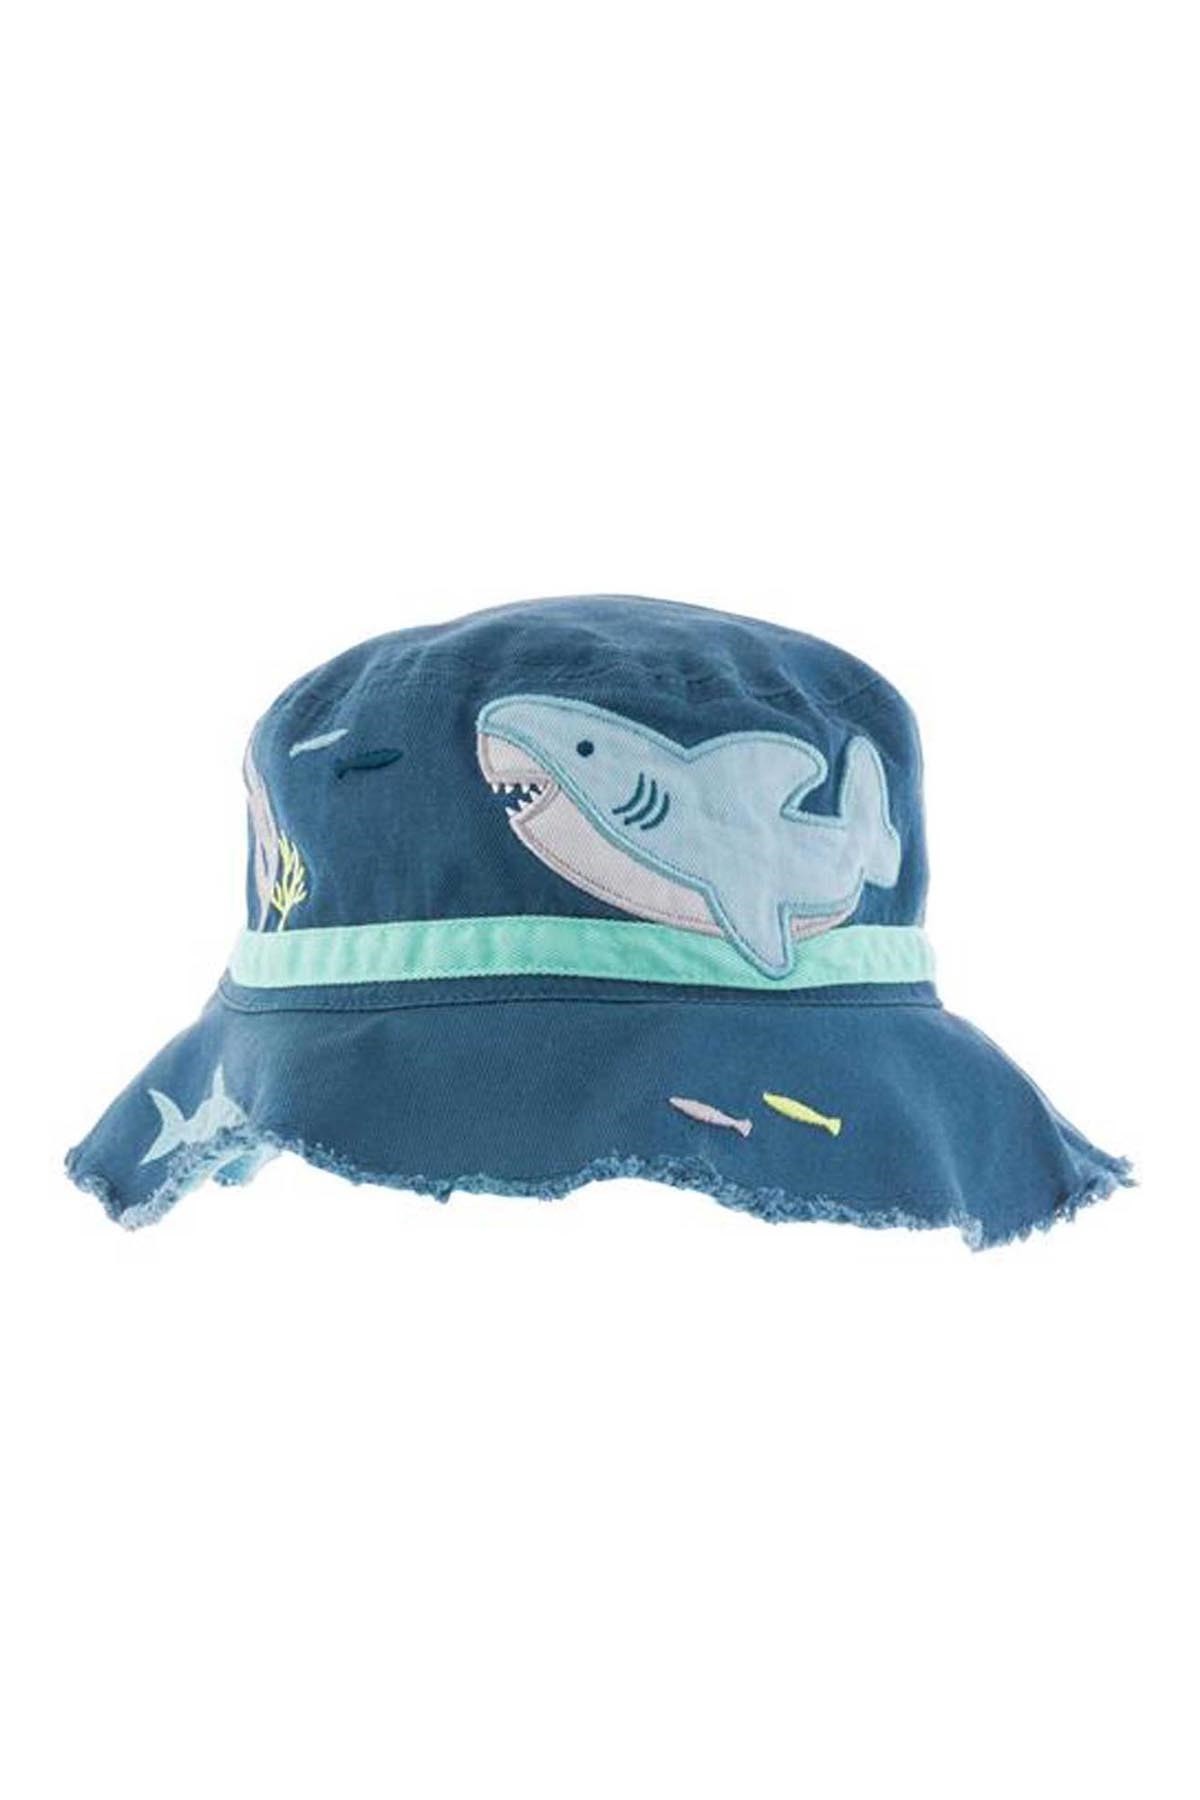 Stephen Joseph Şapka Köpek Balığı Mavi